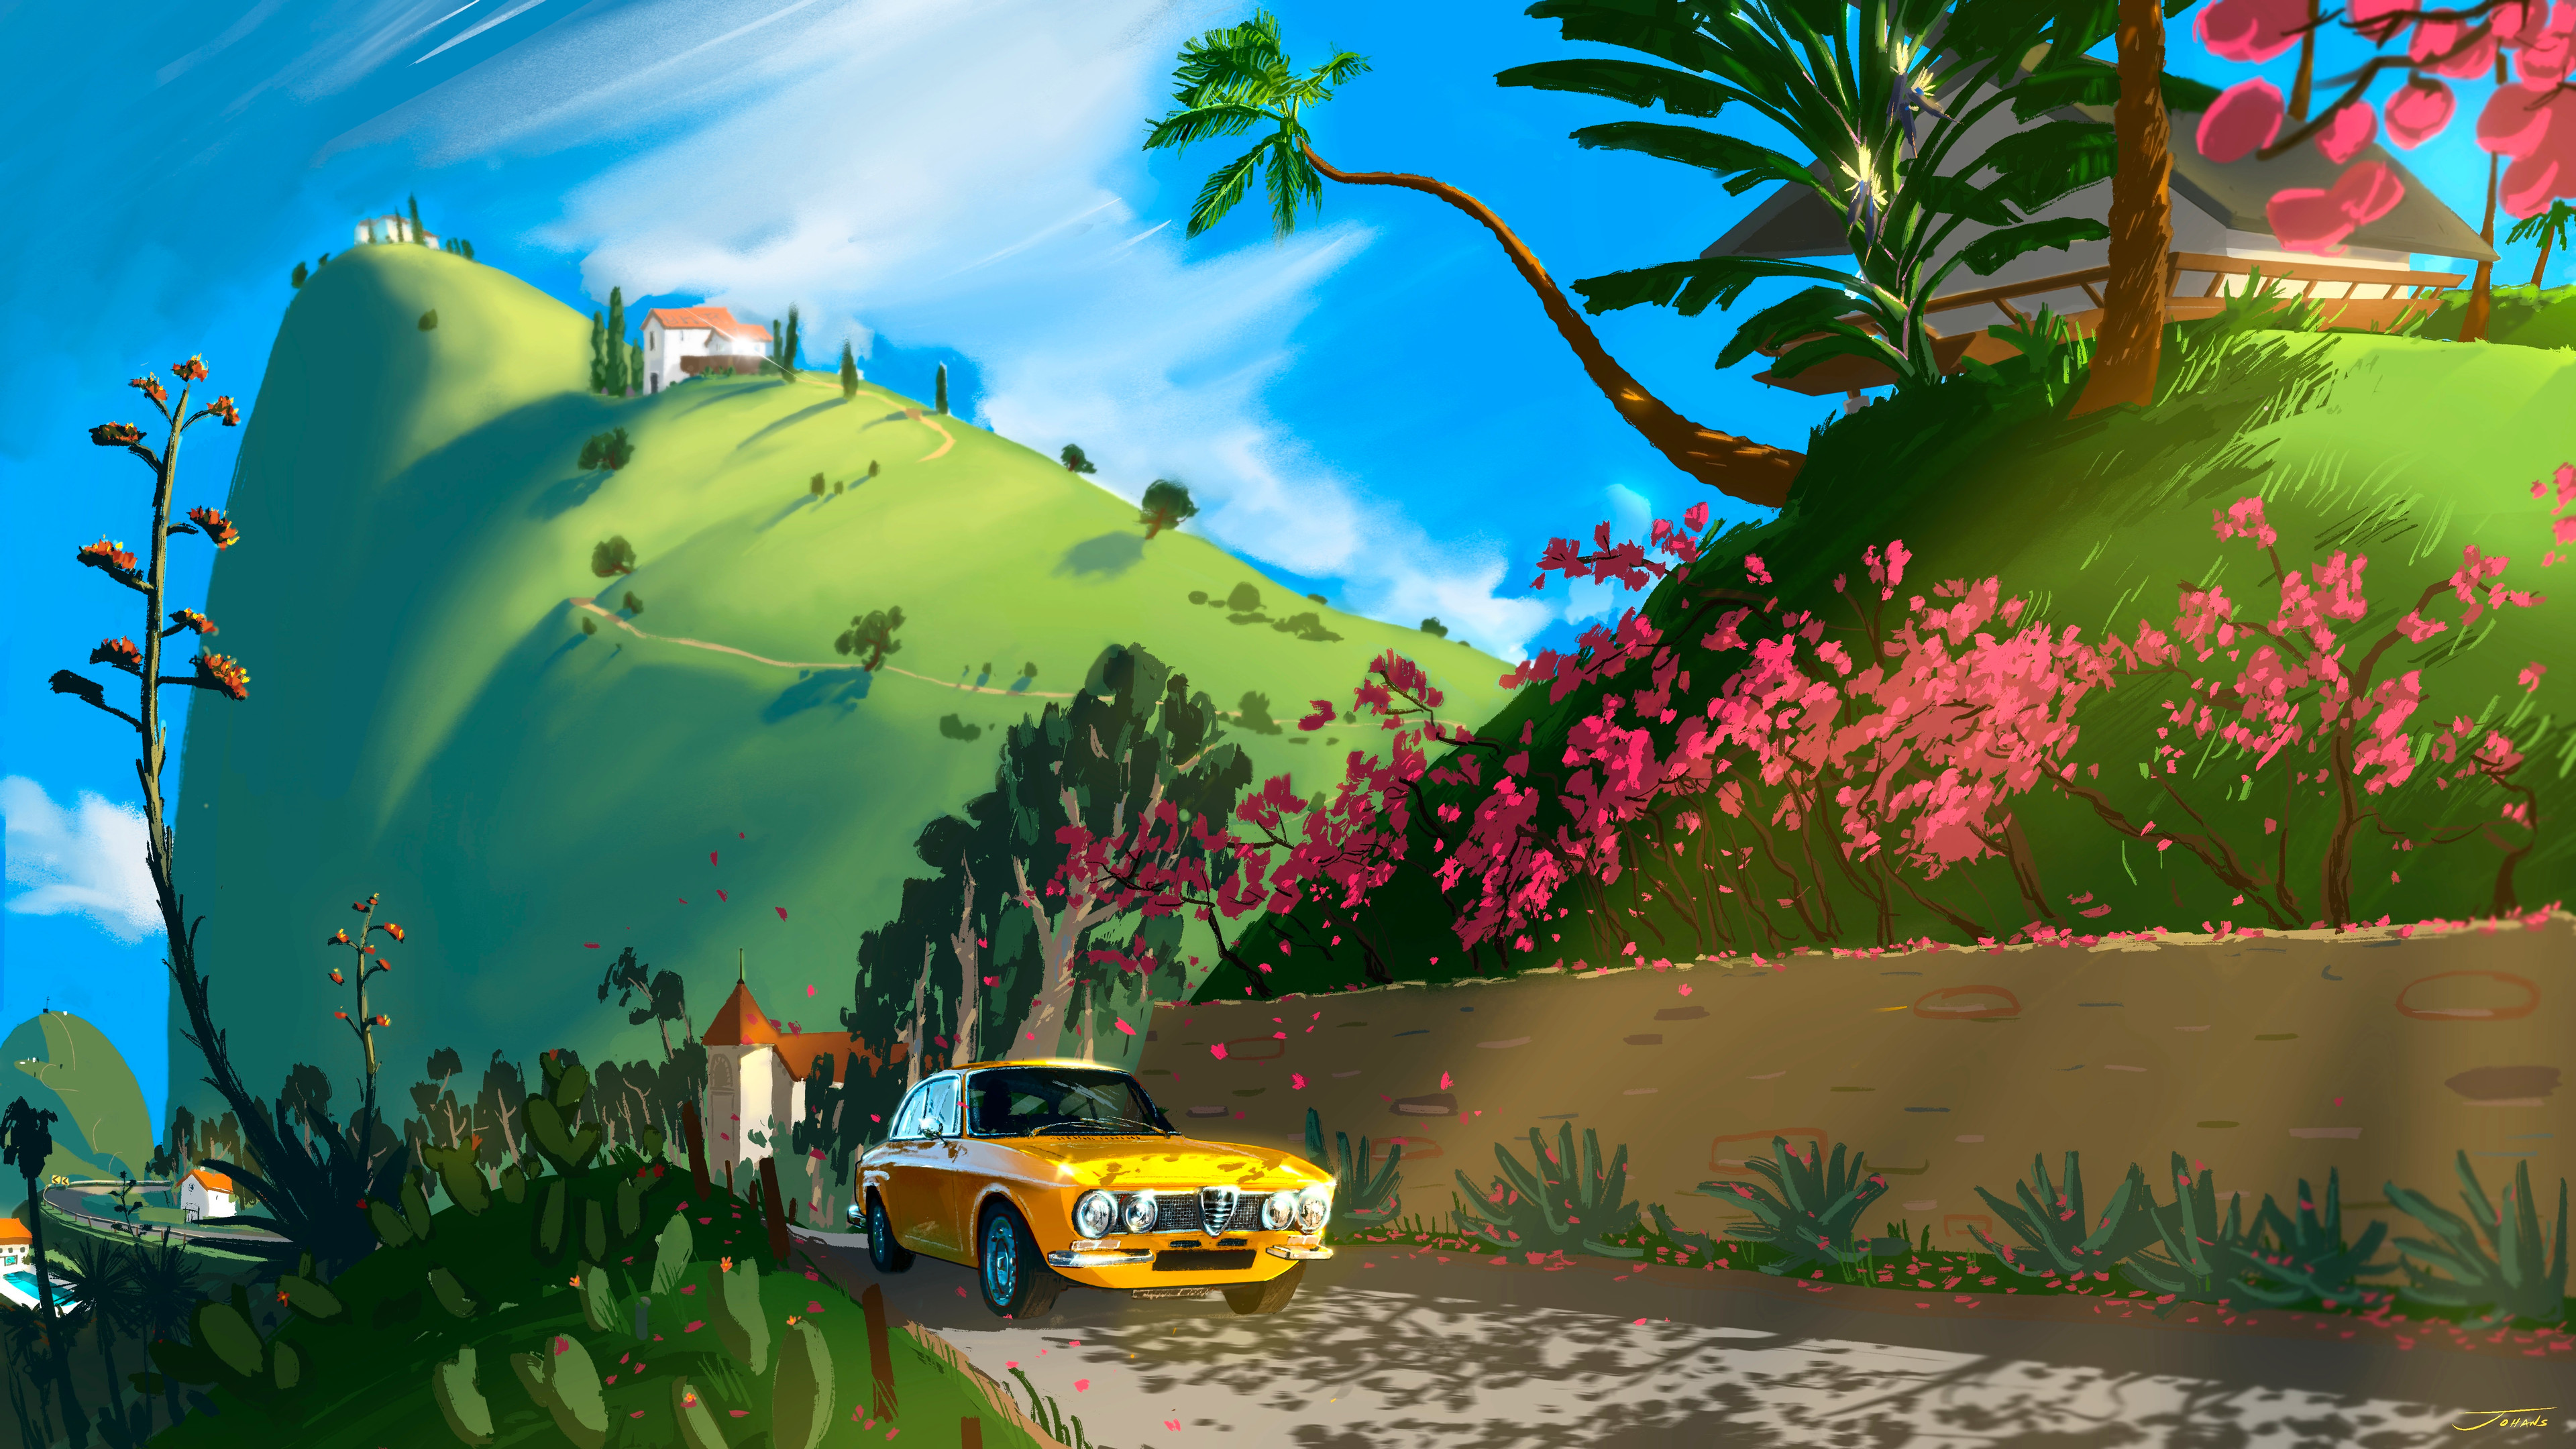 郊外风景,汽车,花,树,房子,4k动漫风景壁纸